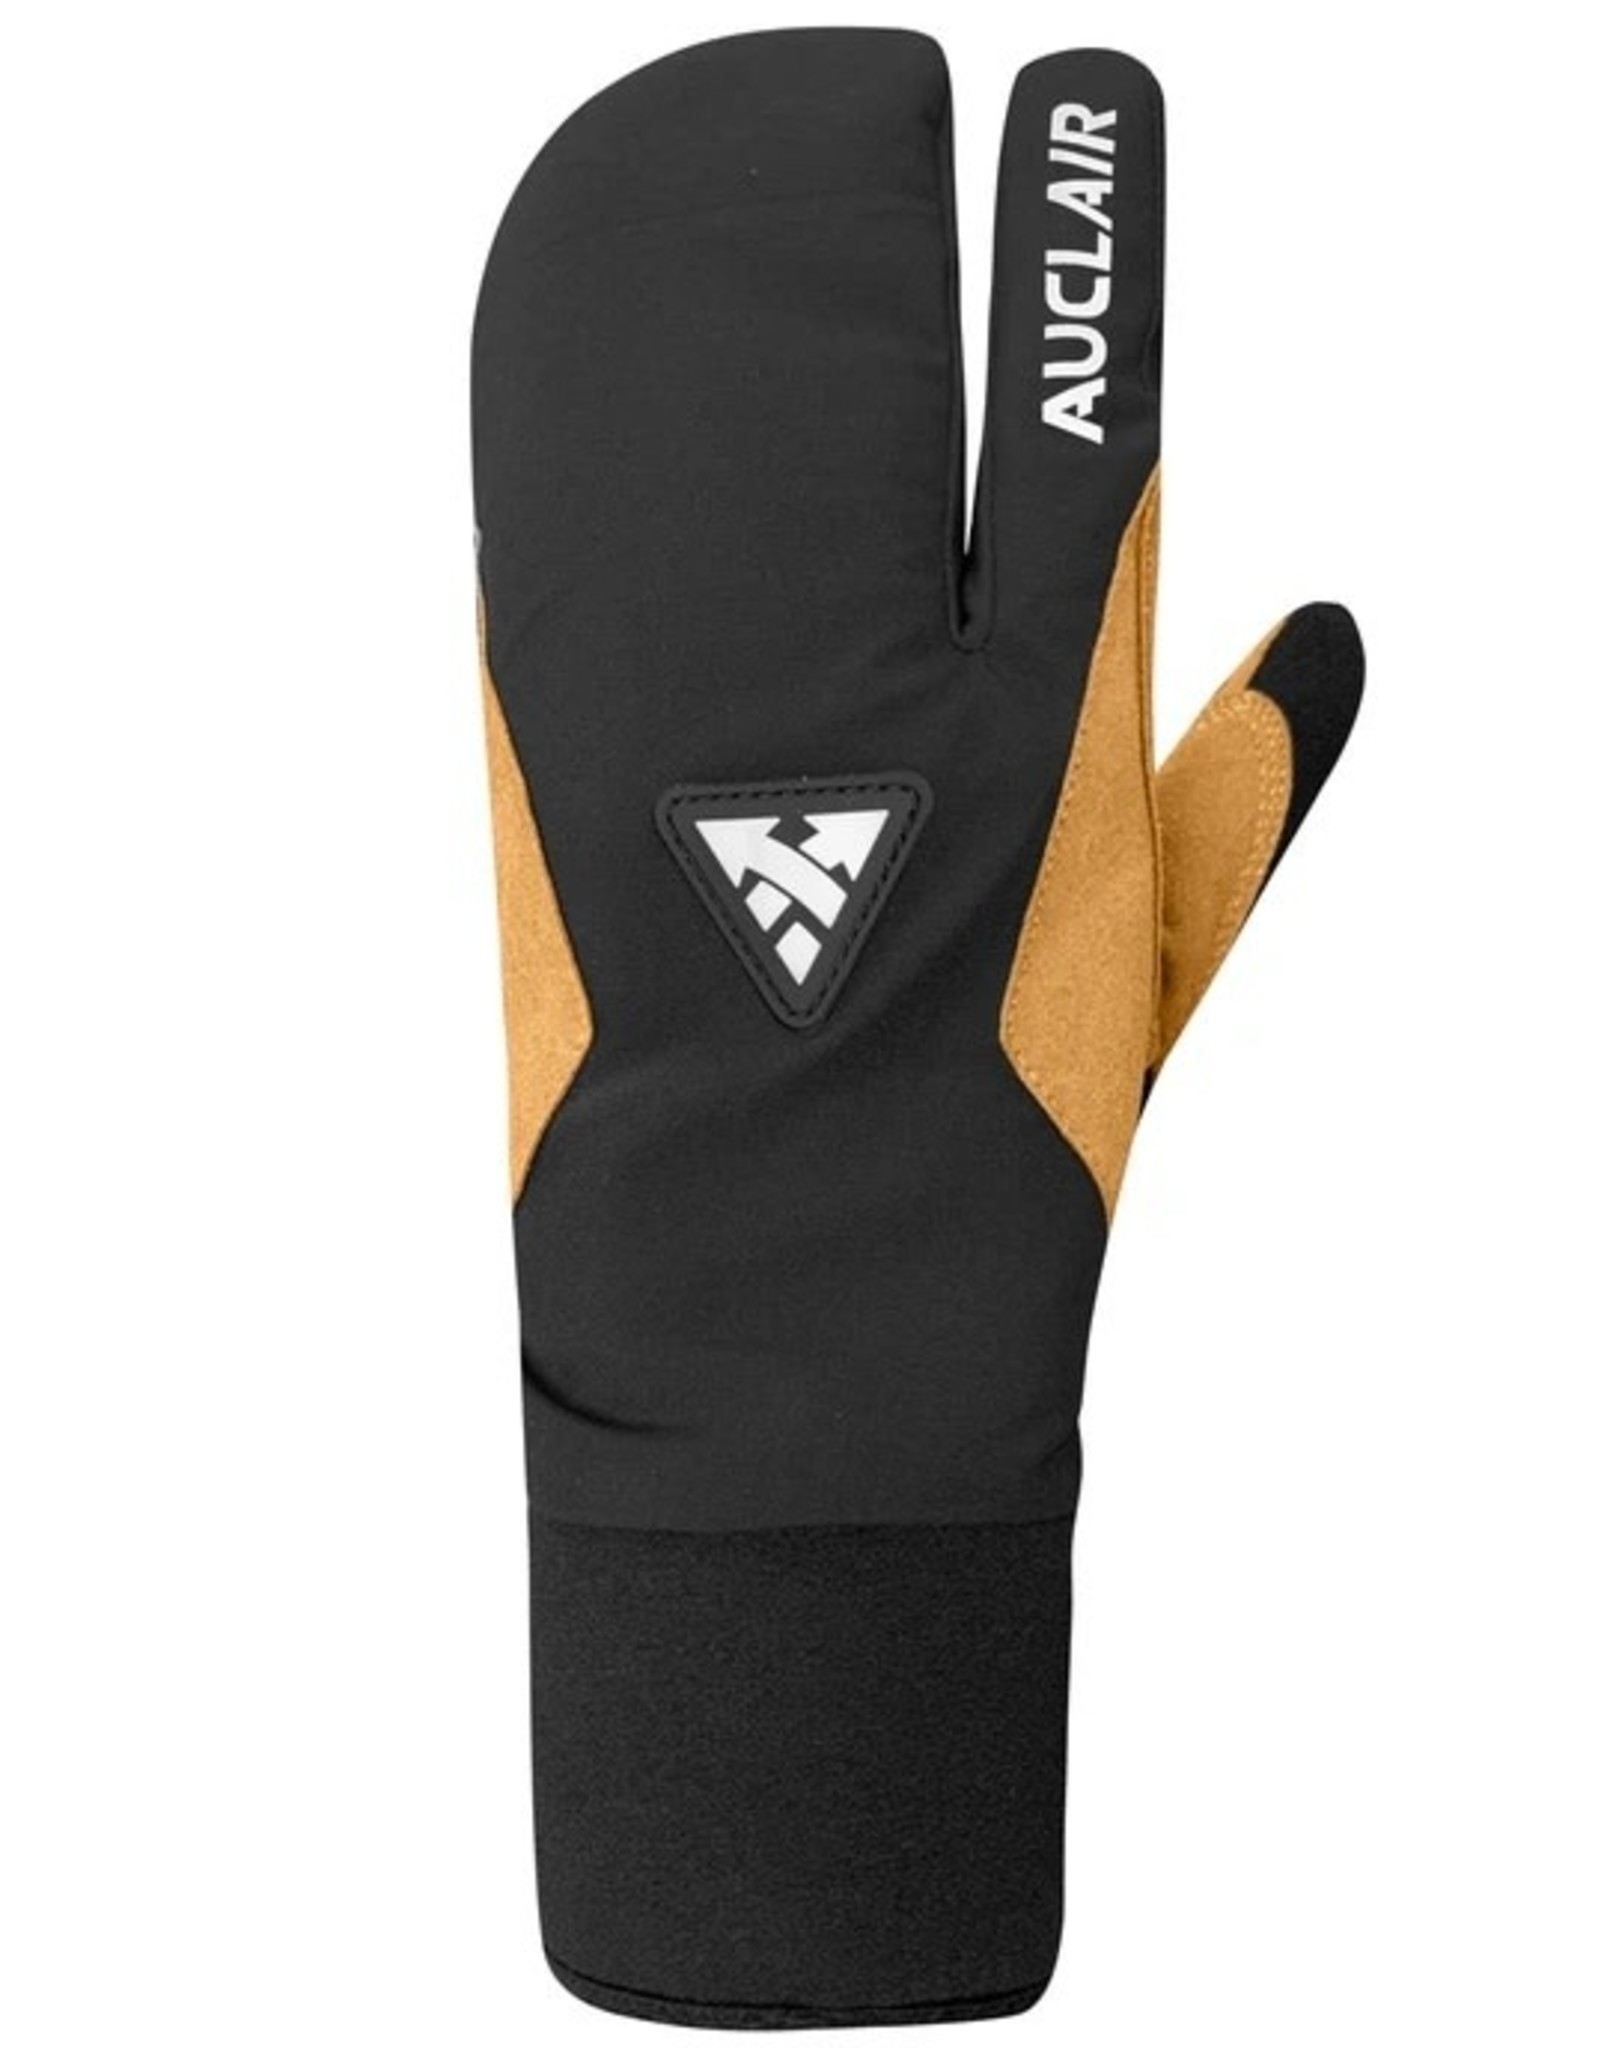 Auclair '22, AUCLAIR, Stellar 3-Finger Gloves, Women's, Black and Tan